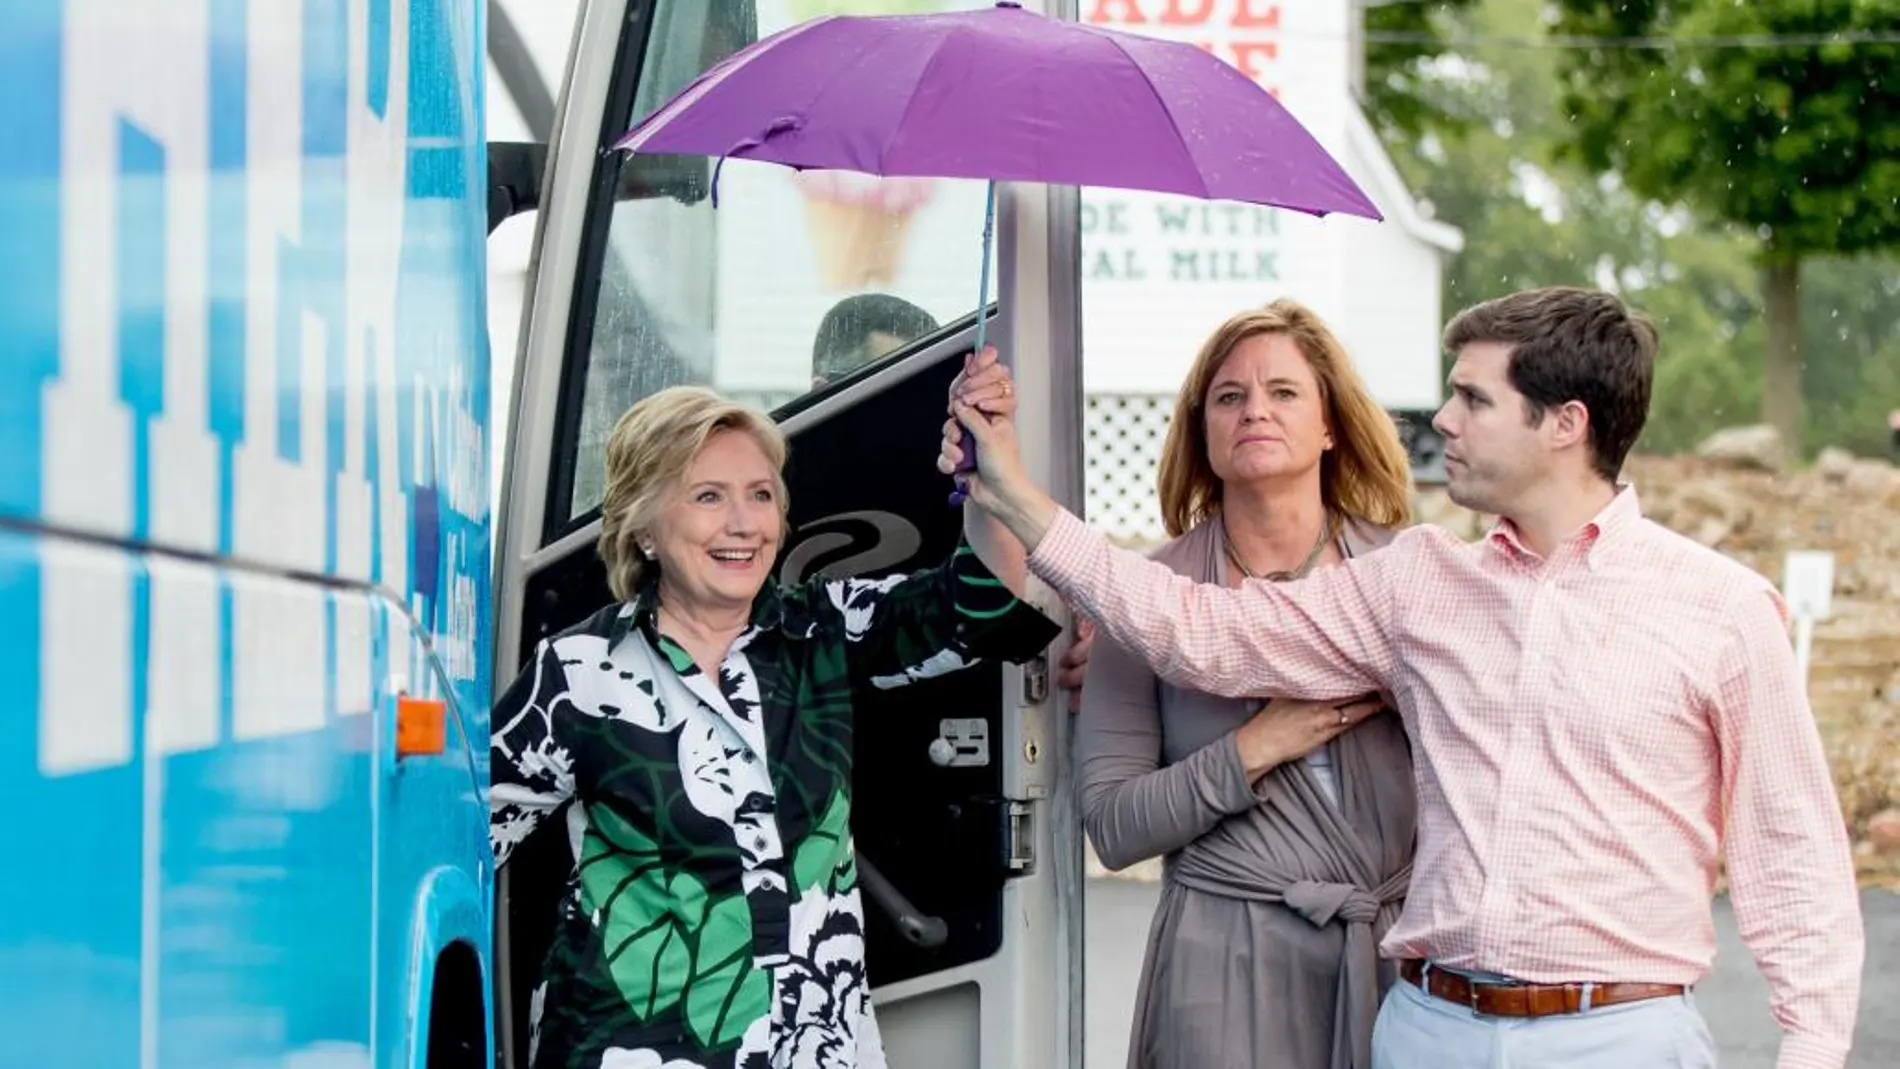 La candidata por el Partido Demócrata a la Casa Blanca, Hillary Clinton, acompañada del secretario de prensa, Nick Merrill, y la directora de comunicación de campaña, Jennifer Palmieri, llegando a Ohio